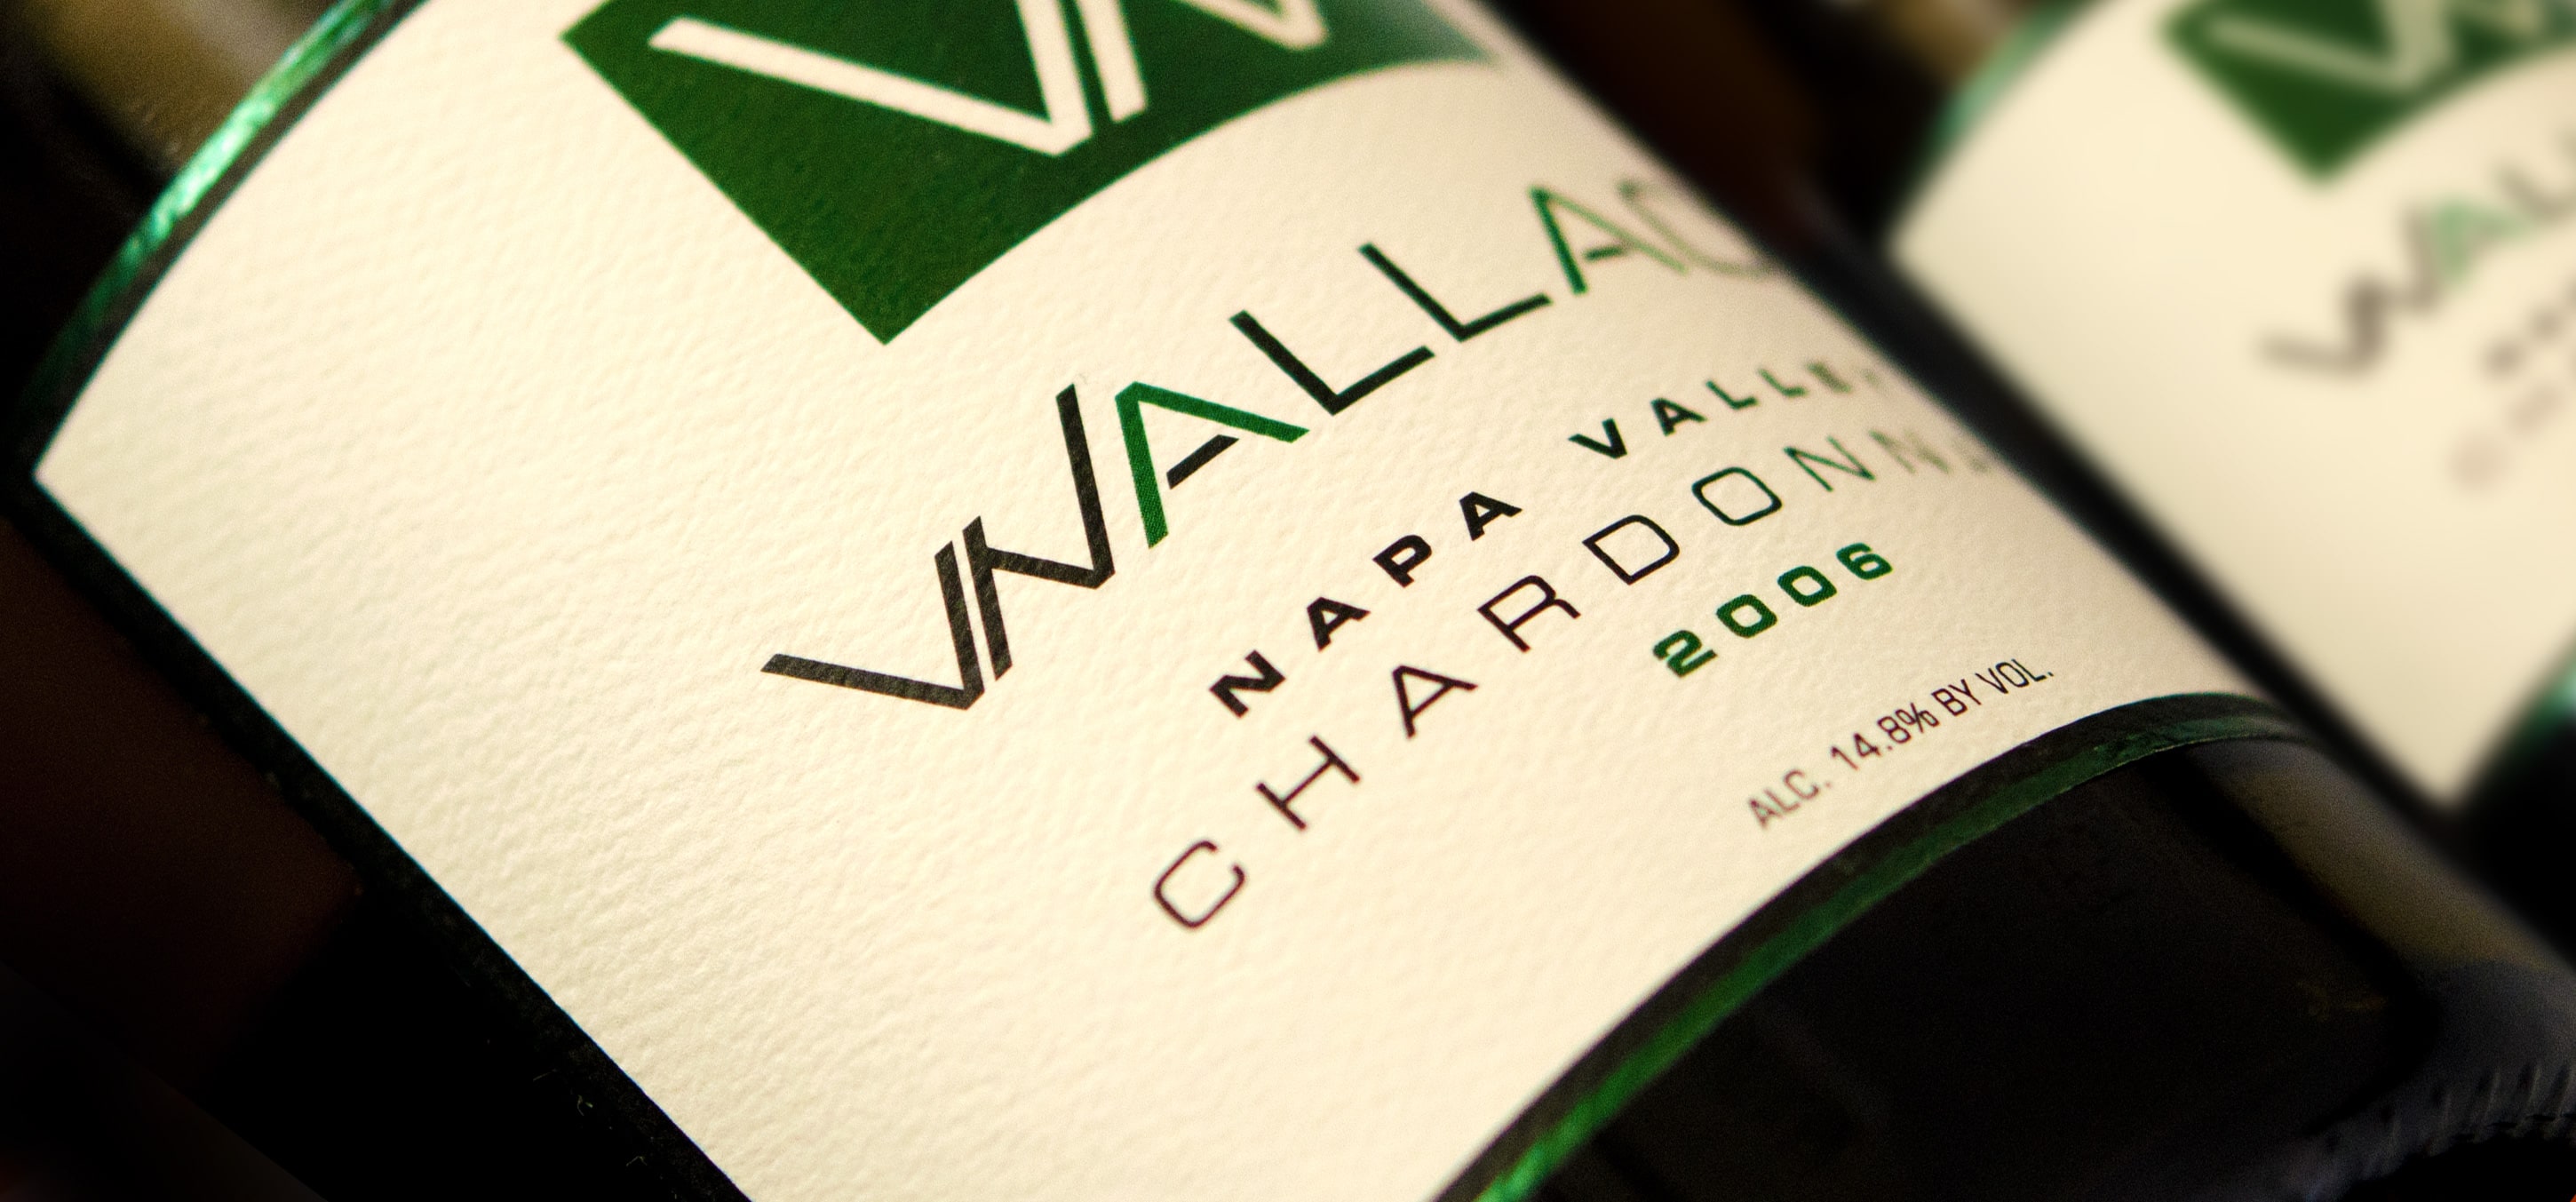 Wallace wine company, Napa valley Chardonny